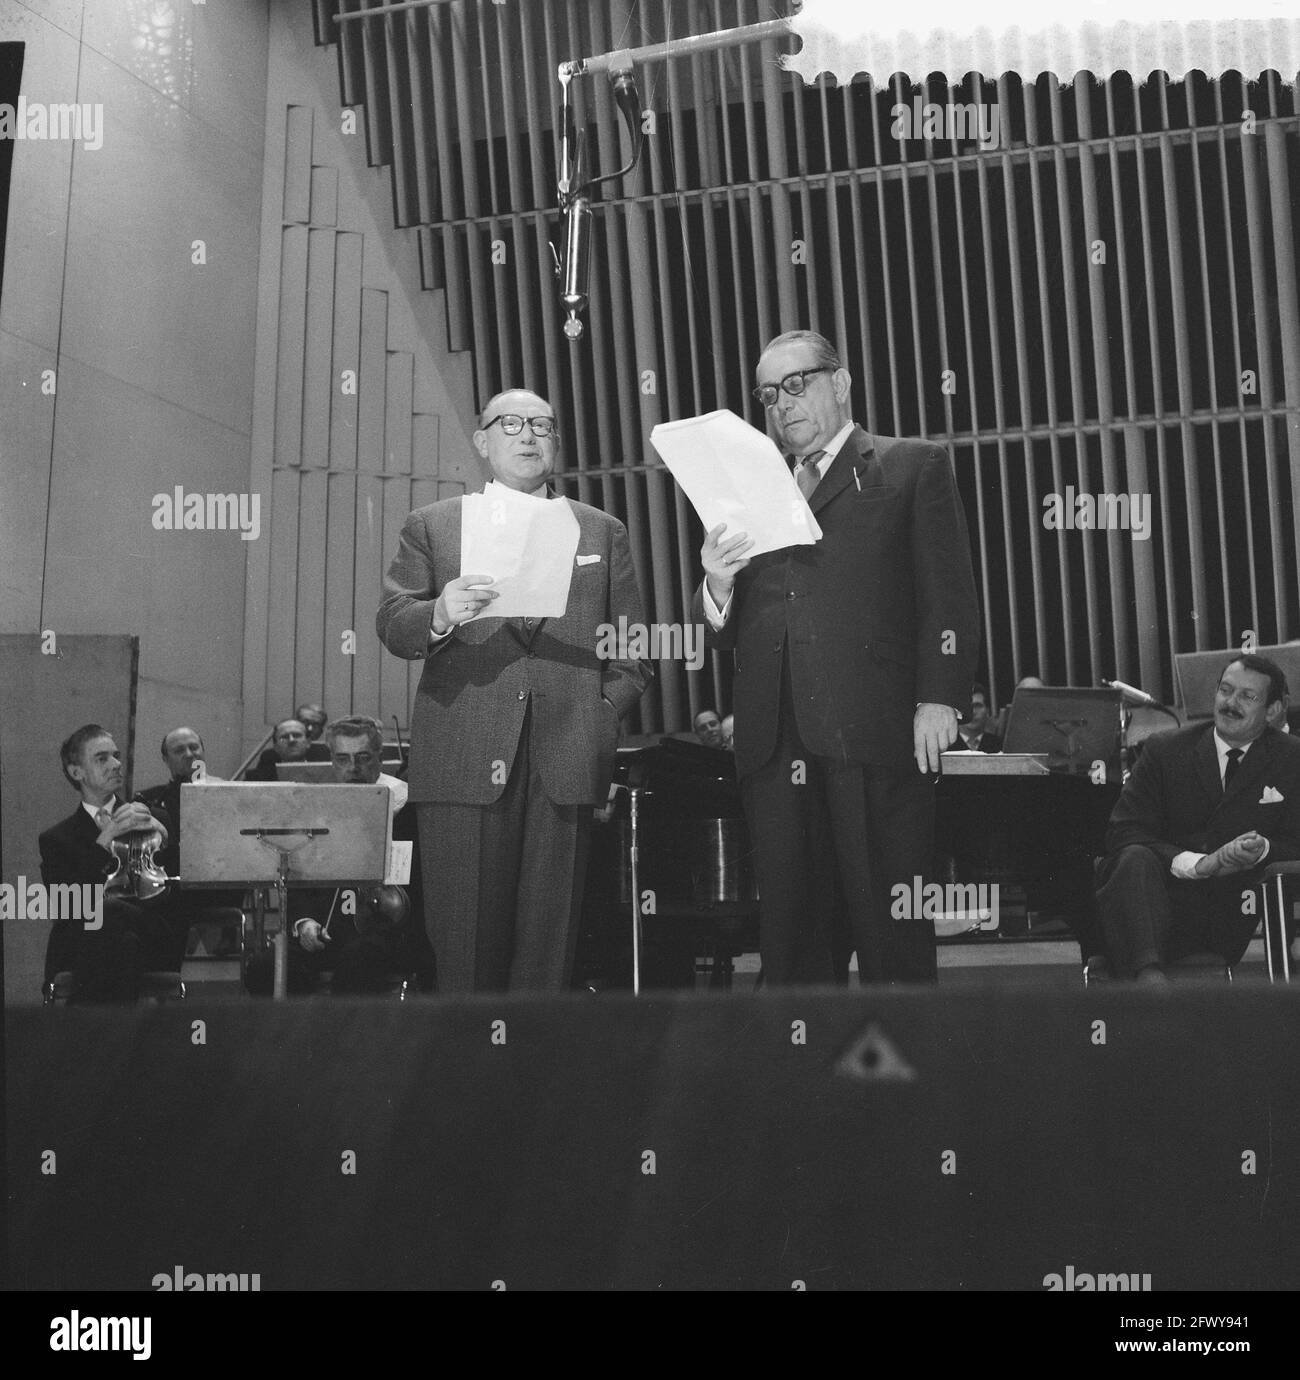 Le trasmissioni radiofoniche sono voi , Kommer Kleyn (l) e Jan van EES (r), 3 novembre 1959, trasmissioni radiofoniche, Paesi Bassi, agenzia di stampa del xx secolo pho Foto Stock